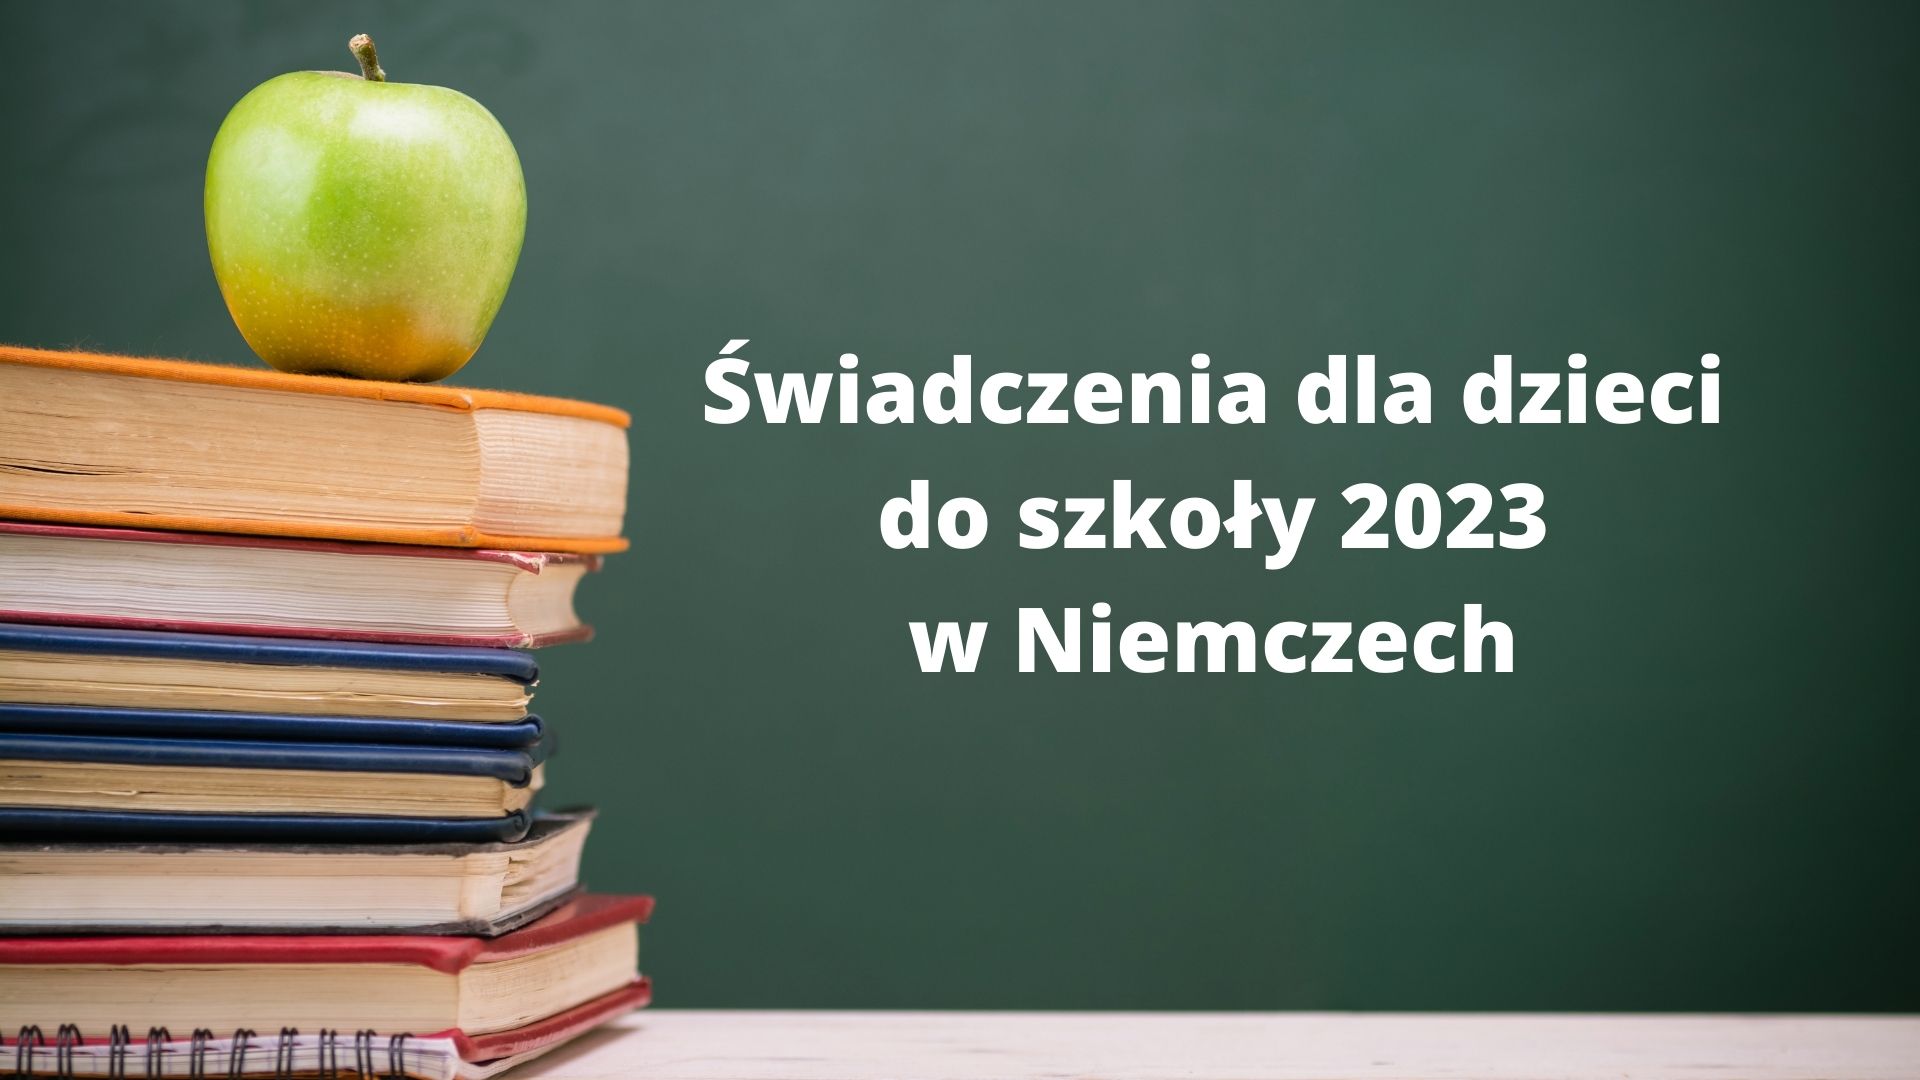 Świadczenia dla dzieci do szkoły w Niemczech 2023